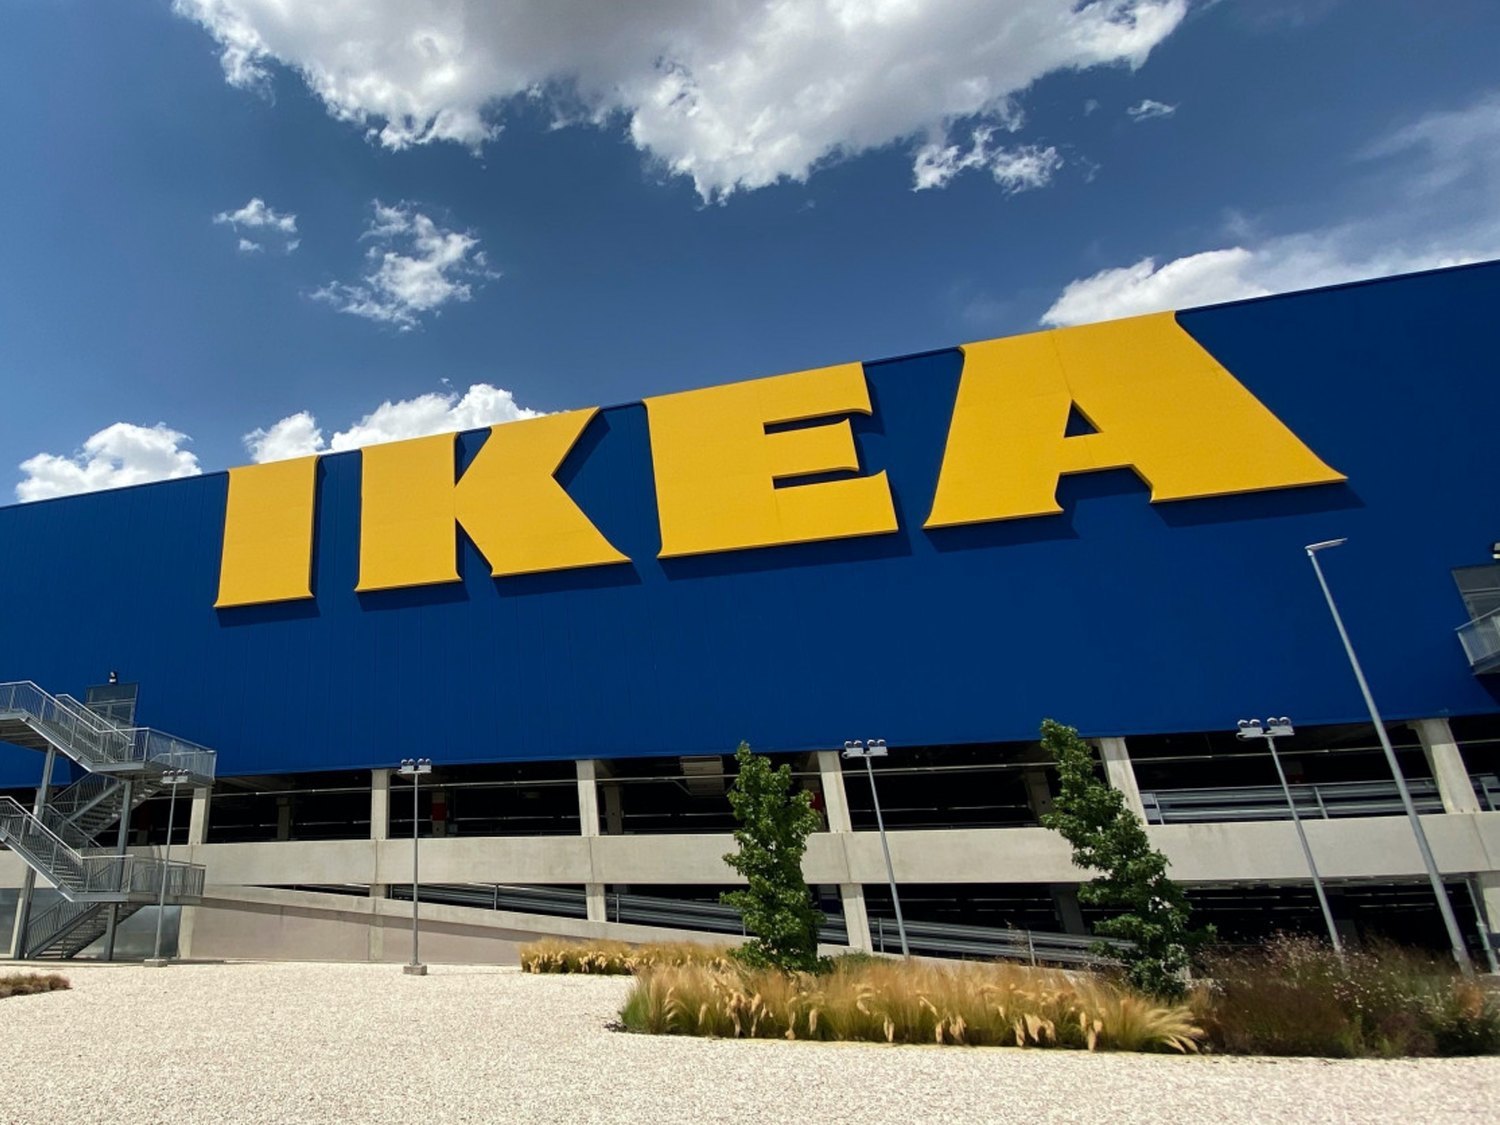 Ikea abrirá dos nuevas tiendas en Madrid y oferta más de un centenar de empleos